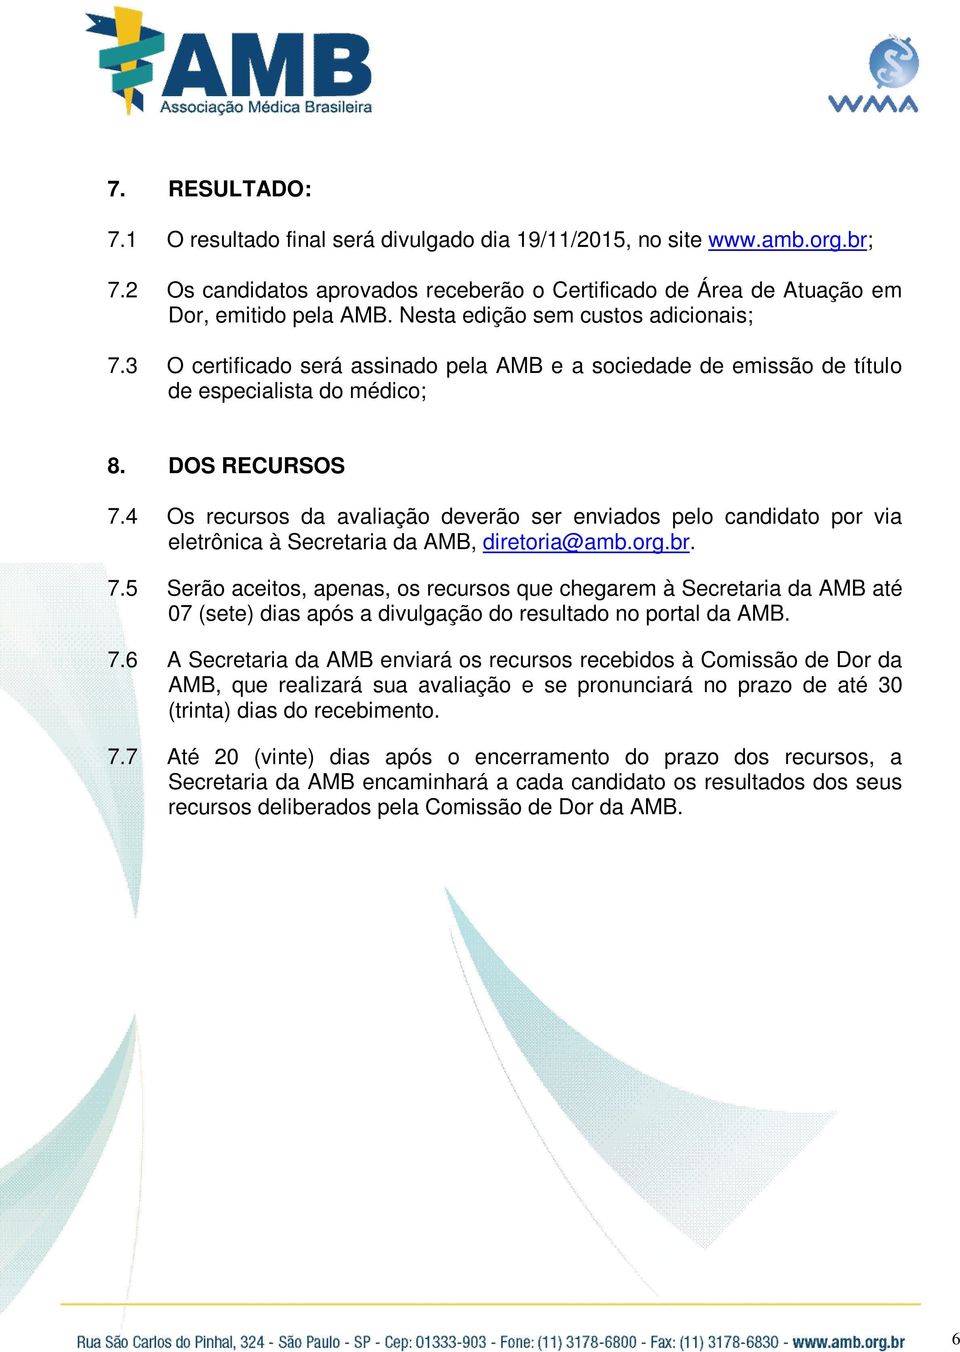 4 Os recursos da avaliação deverão ser enviados pelo candidato por via eletrônica à Secretaria da AMB, diretoria@amb.org.br. 7.